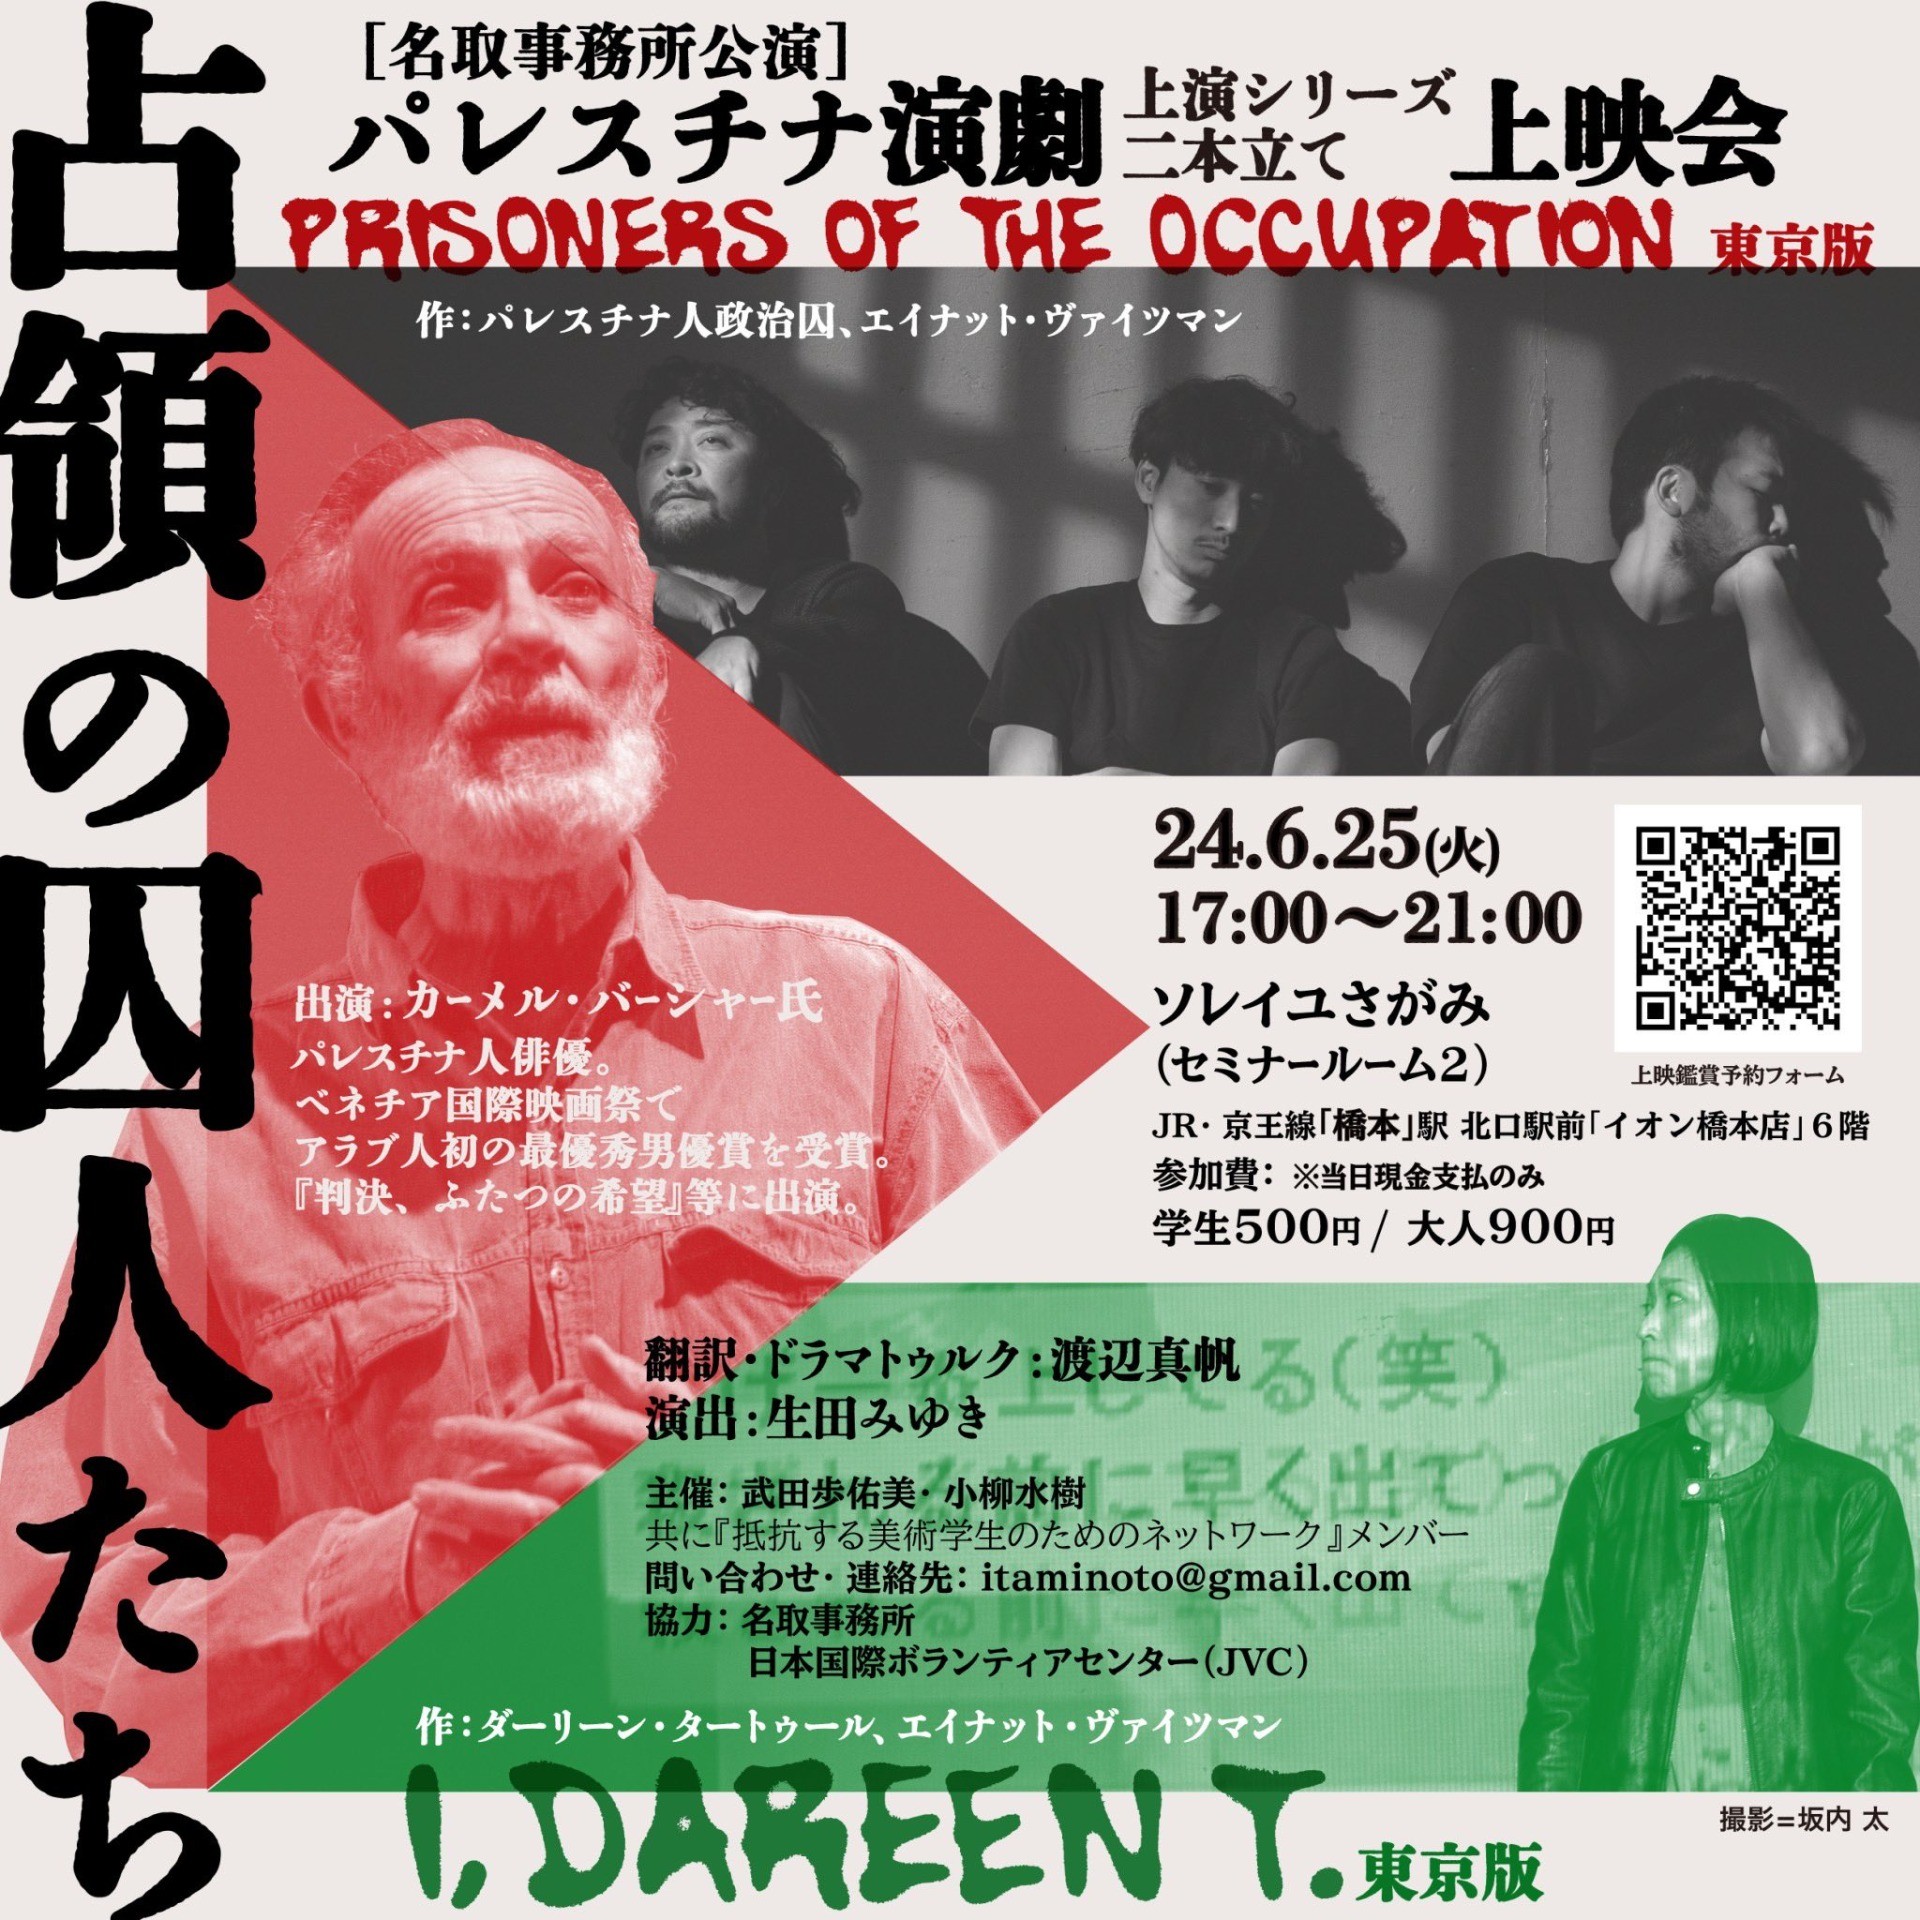 6/25(火)：パレスチナ演劇 「占領の囚人たち」「I, Dareen T.」二本立て上映会 in 橋本